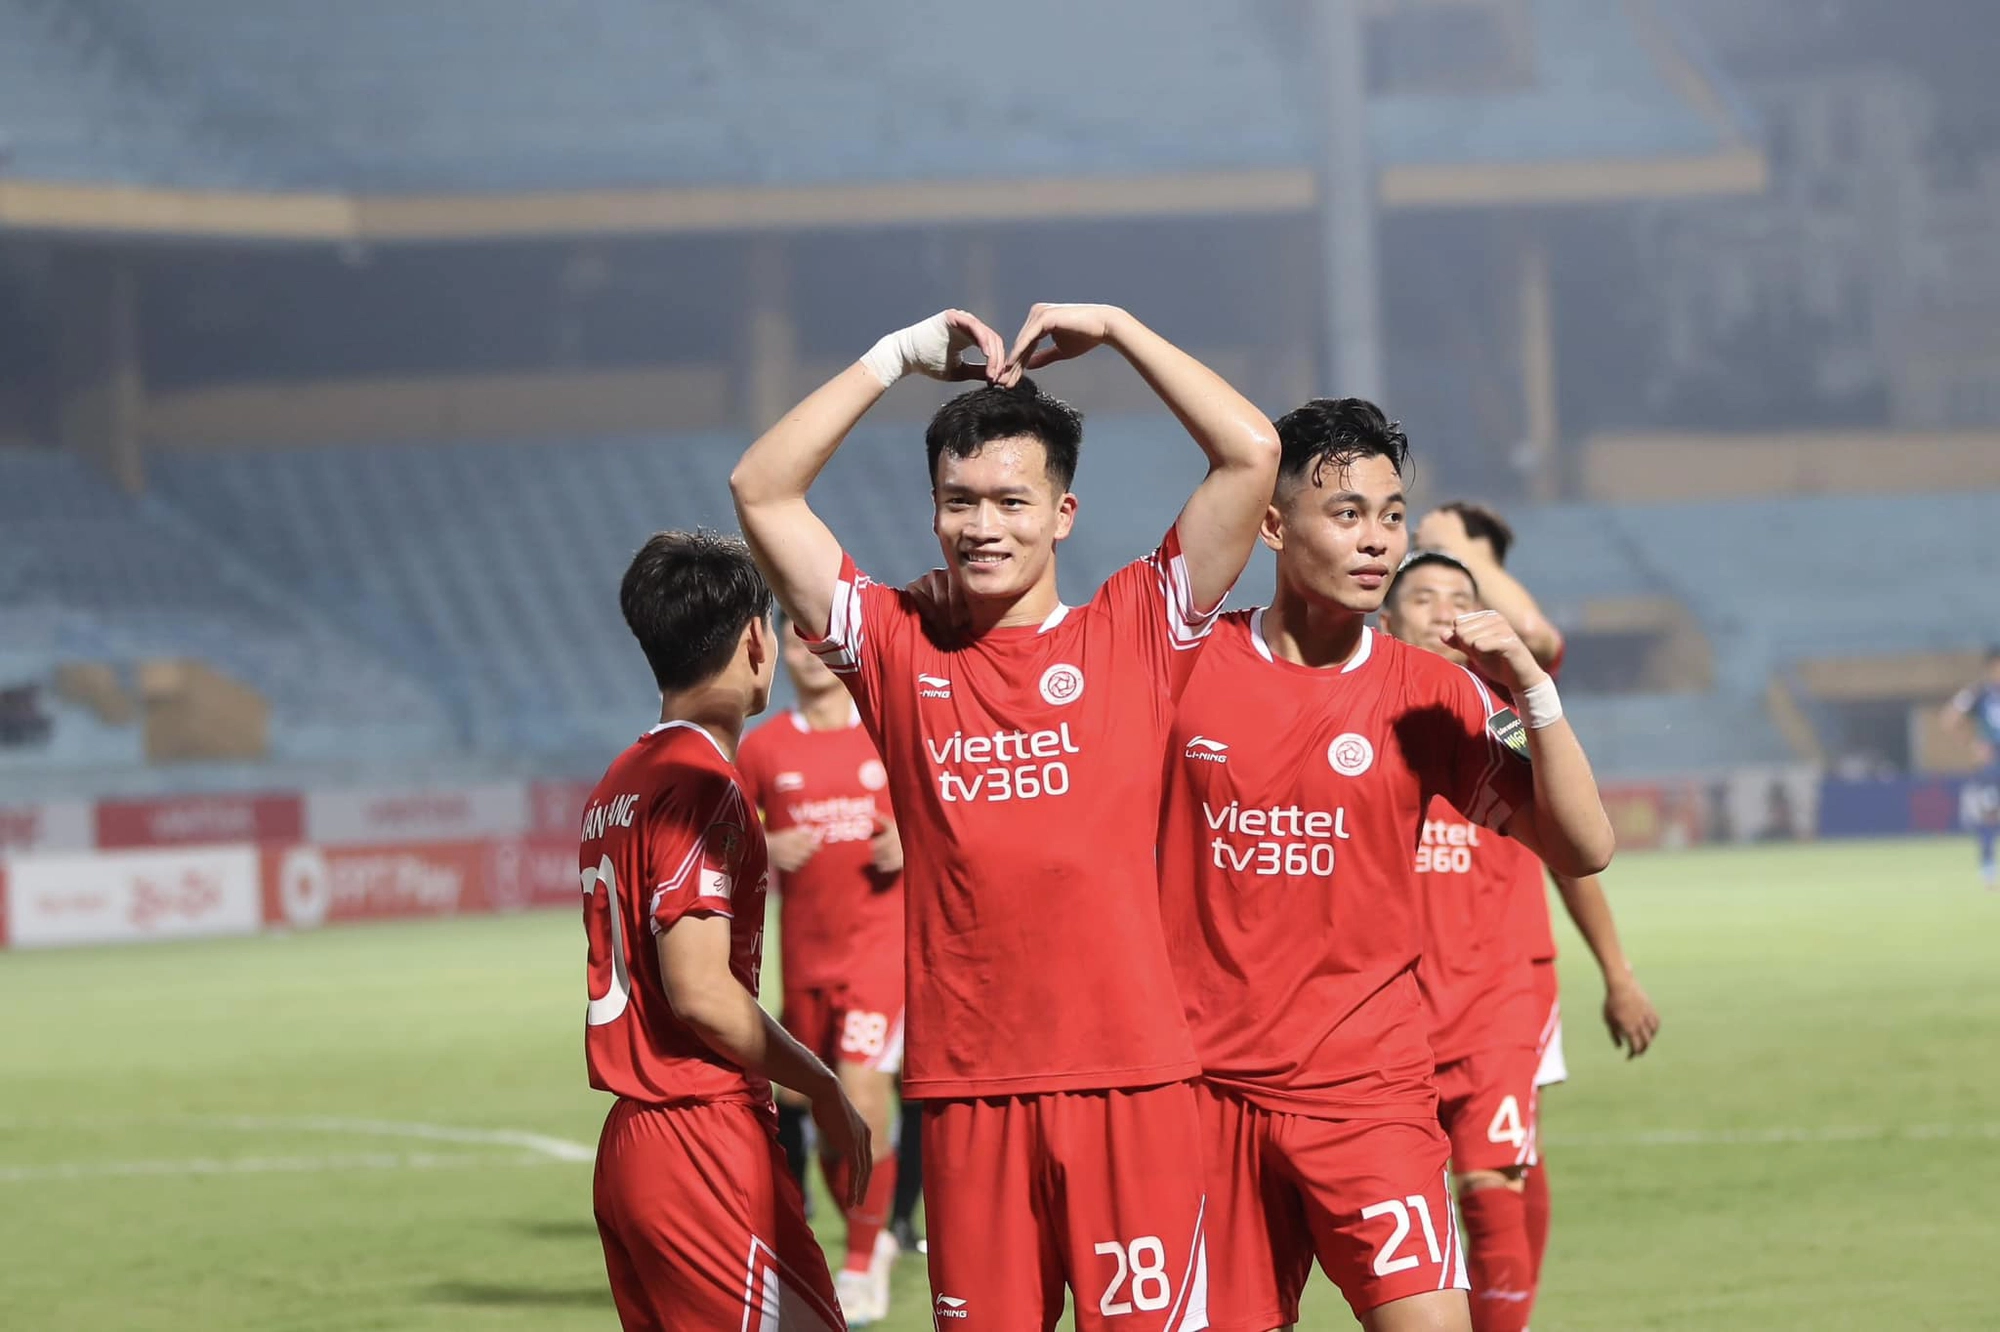 Tiết lộ danh tính 7 đội bóng theo đuổi ngôi sao đắt giá nhất Việt Nam  - Ảnh 1.